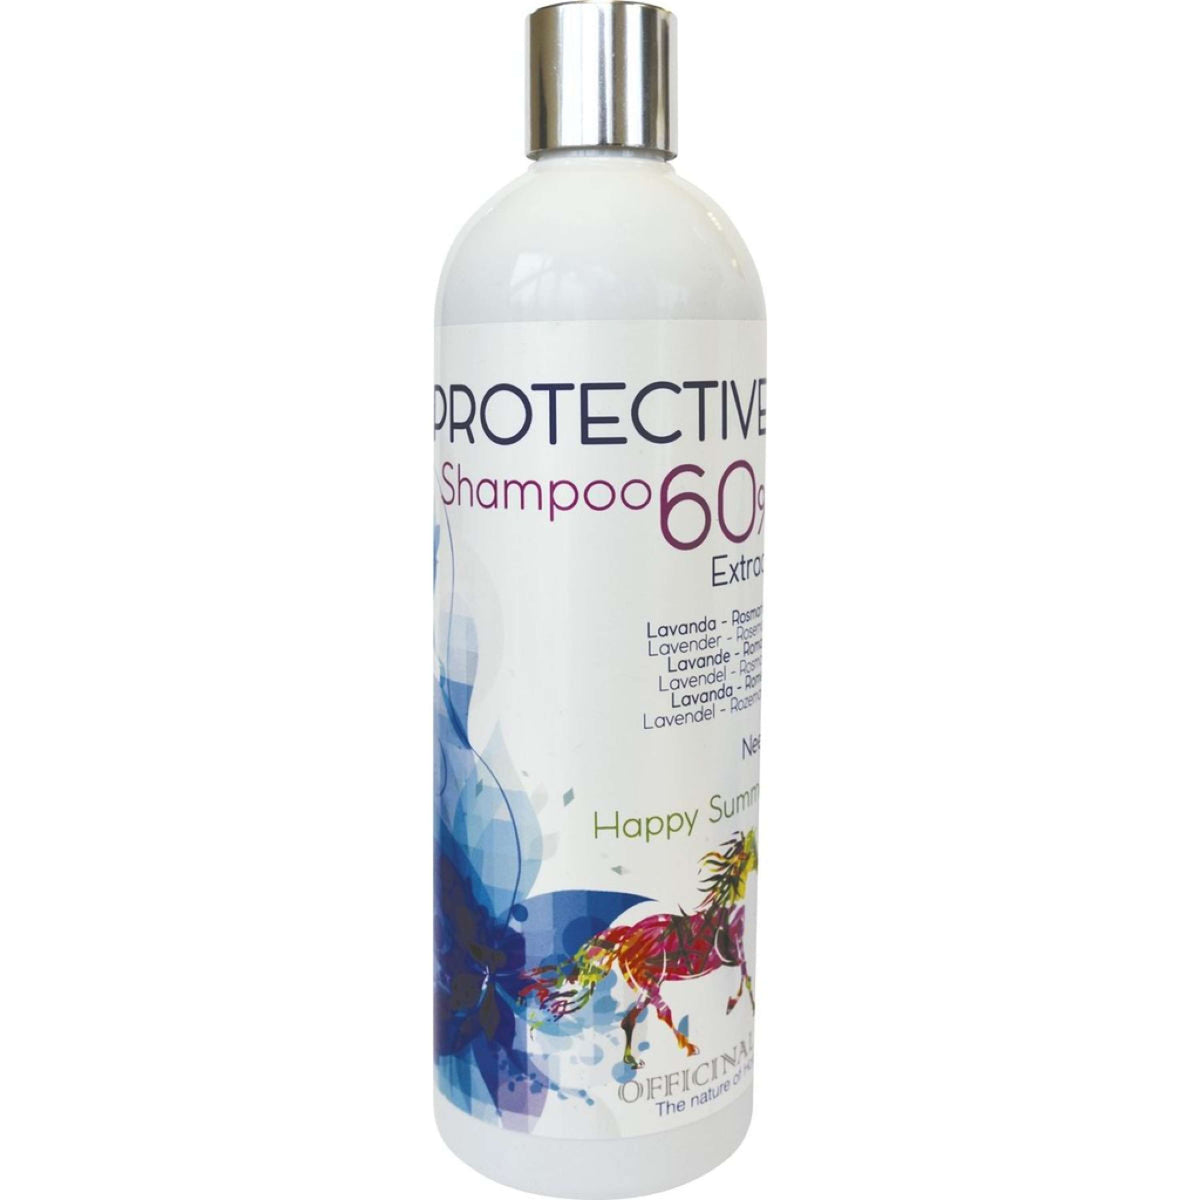 Officinalis Shampoo 60% Protective